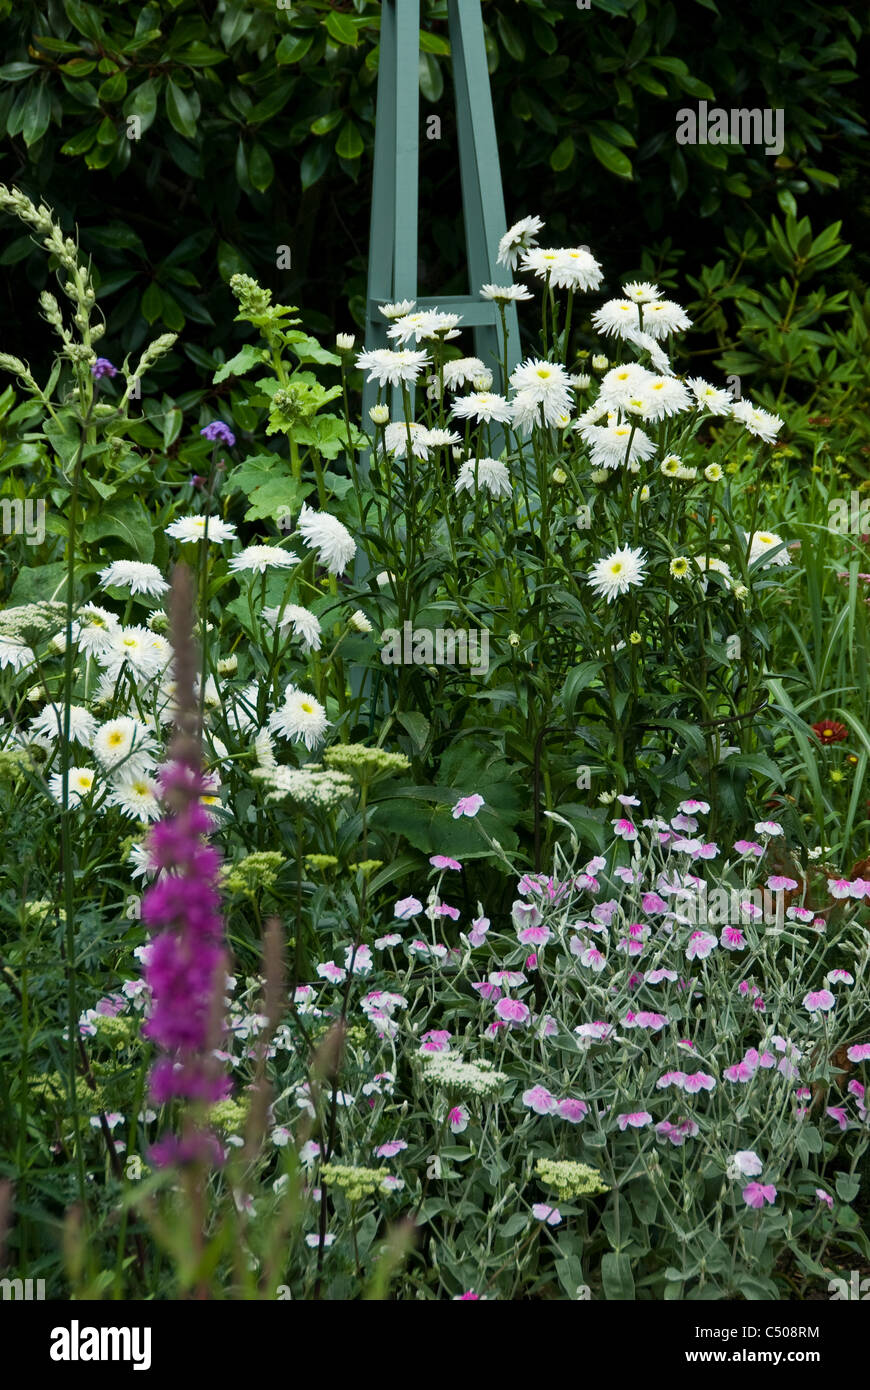 A summer border in an English garden. Stock Photo